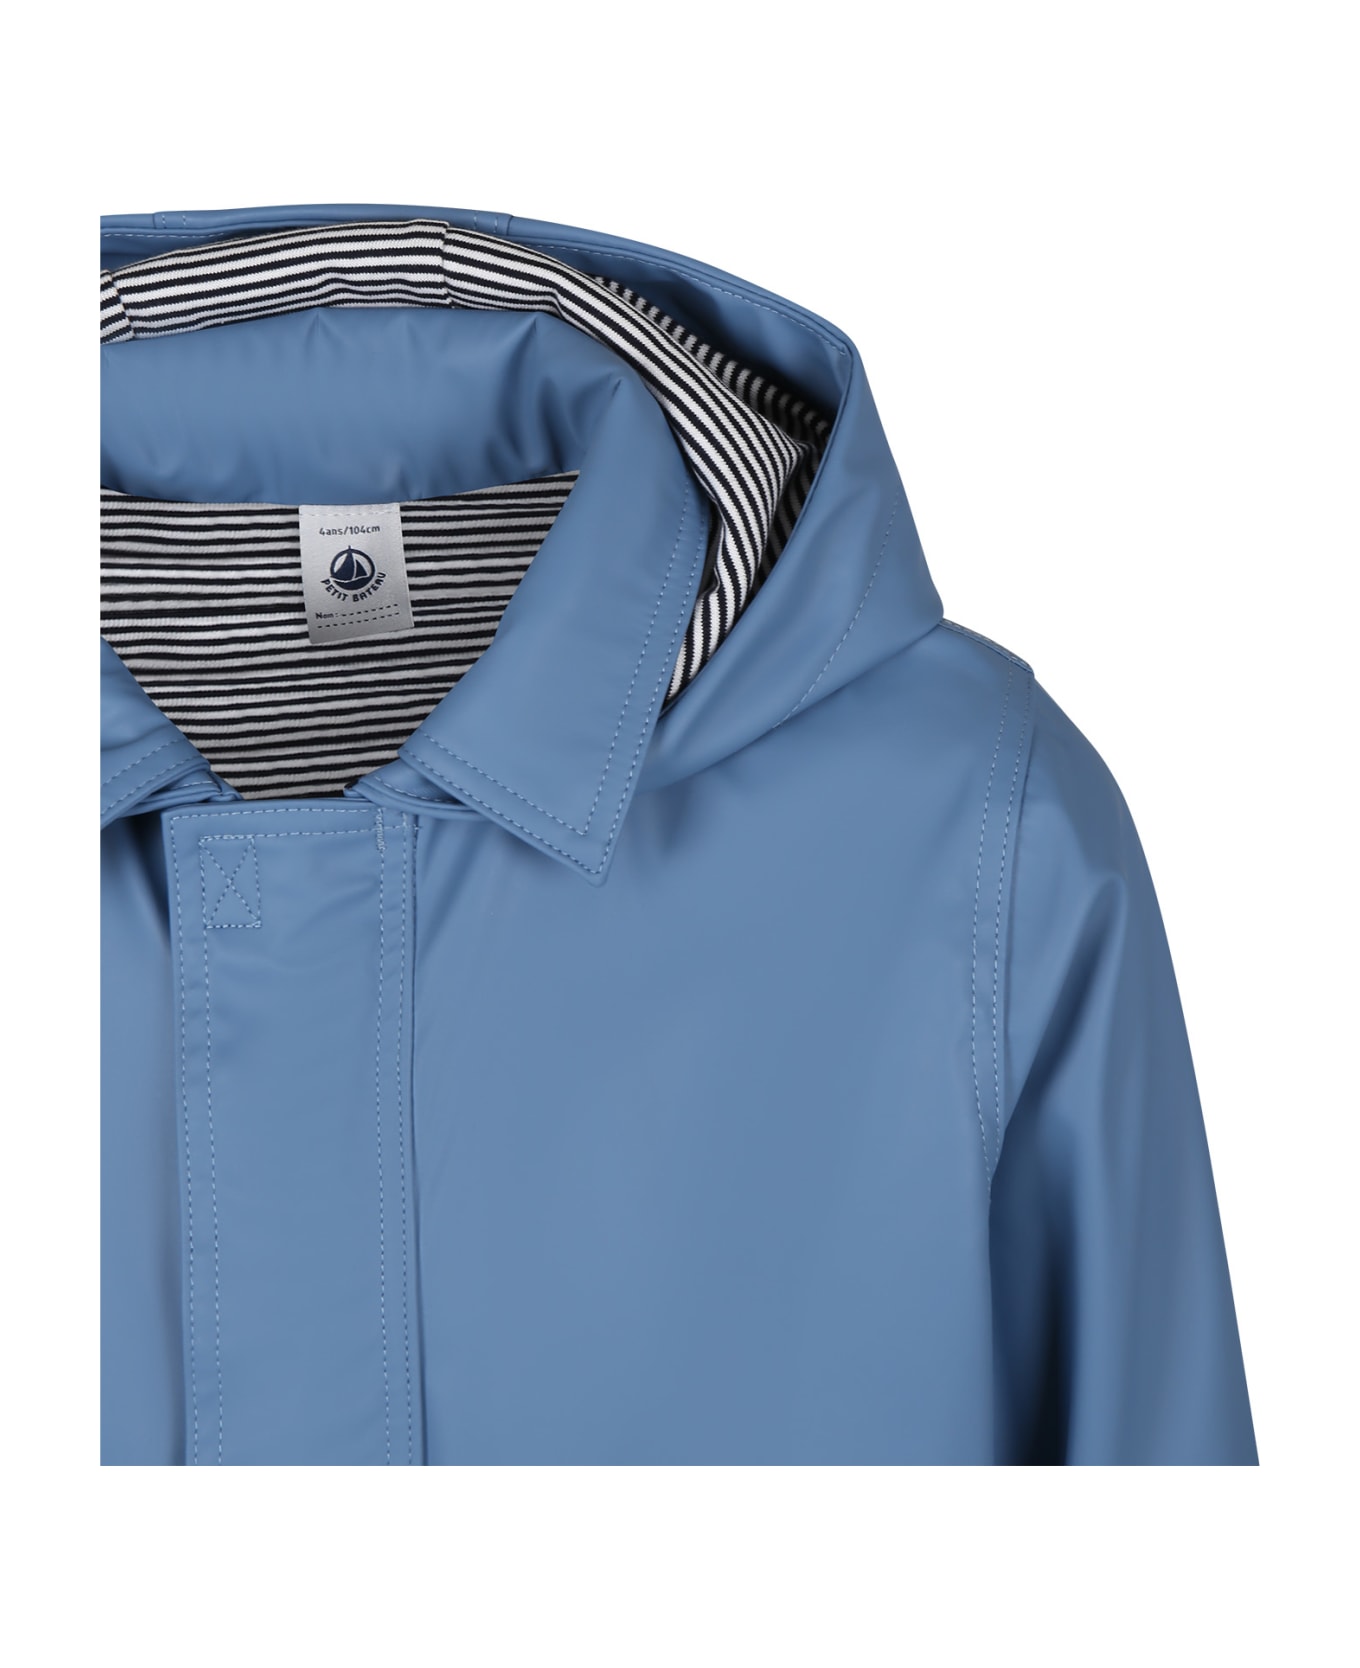 Petit Bateau Light Blue Raincoat For Boy - Light Blue